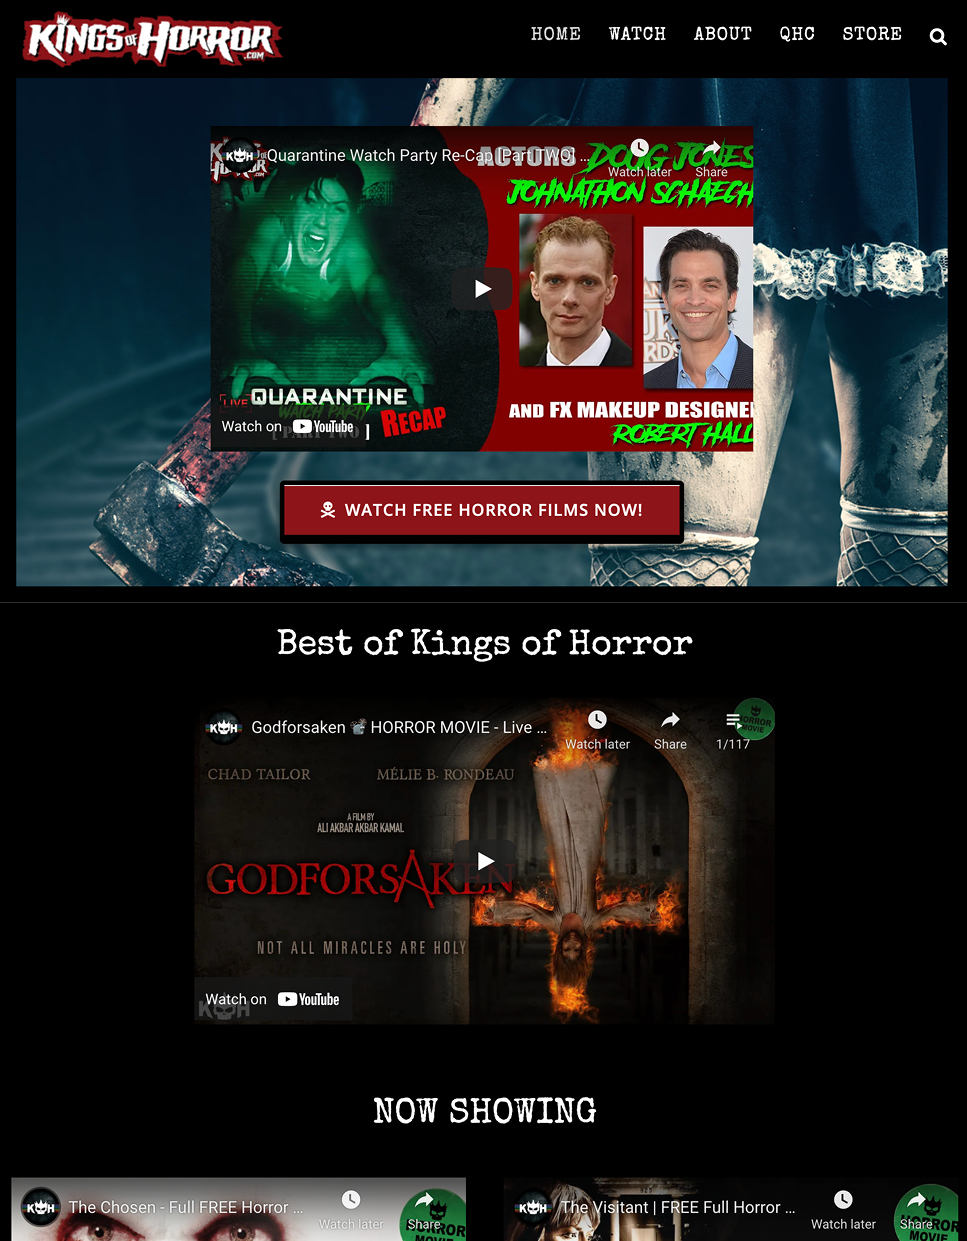 Kings of Horror.com